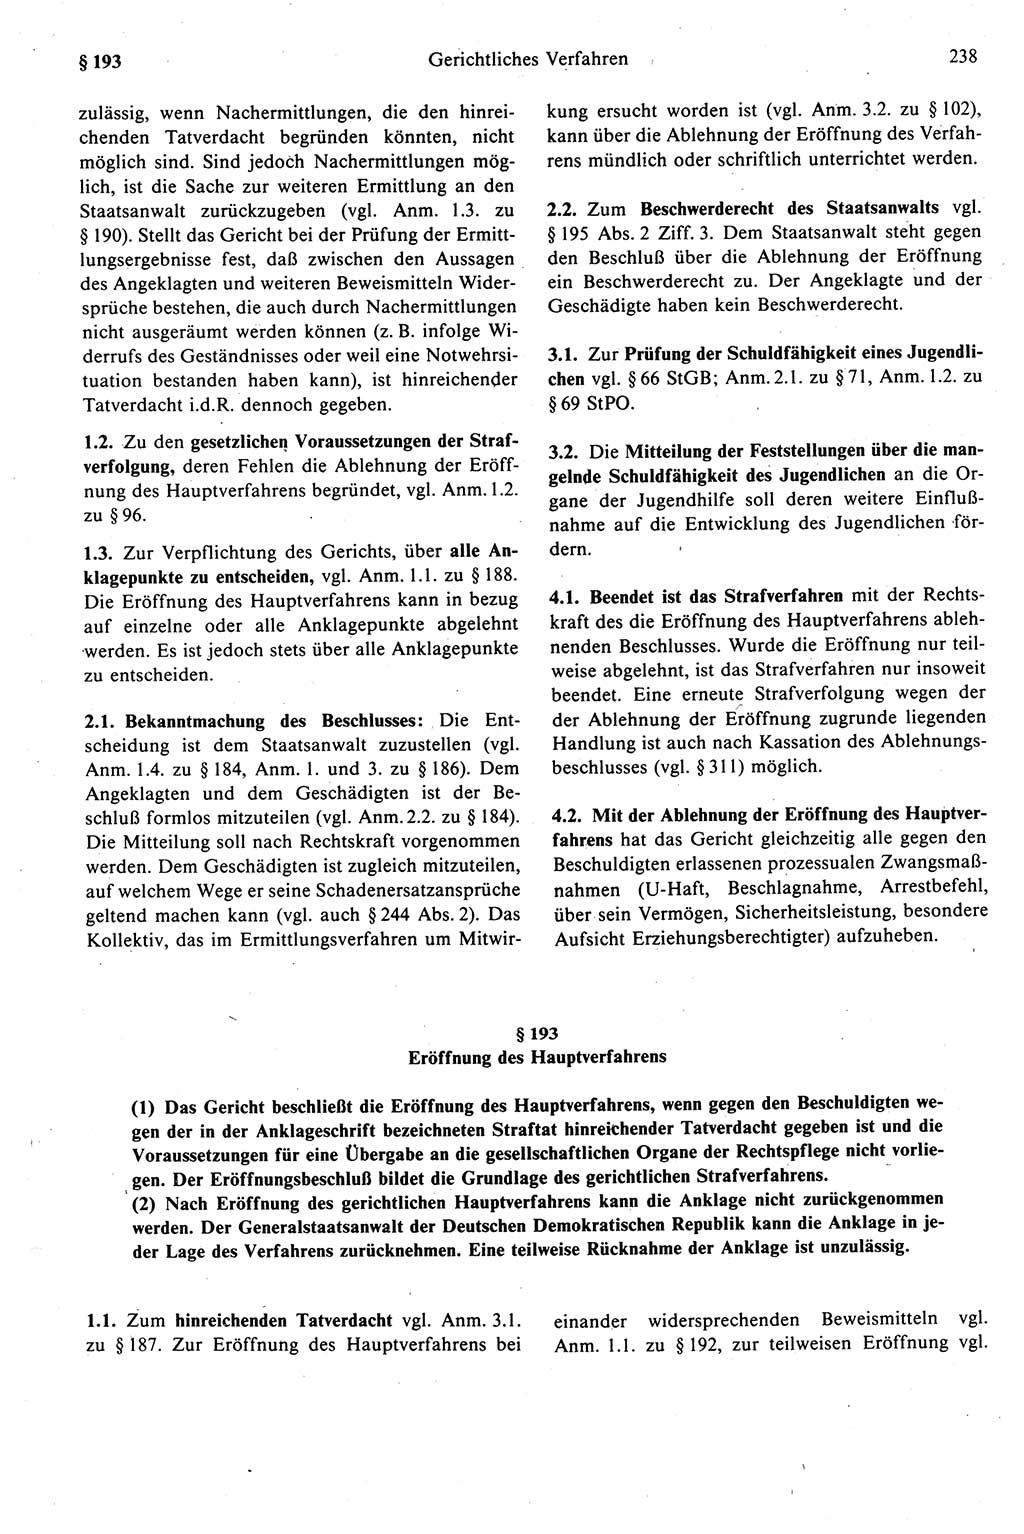 Strafprozeßrecht der DDR (Deutsche Demokratische Republik), Kommentar zur Strafprozeßordnung (StPO) 1989, Seite 238 (Strafprozeßr. DDR Komm. StPO 1989, S. 238)